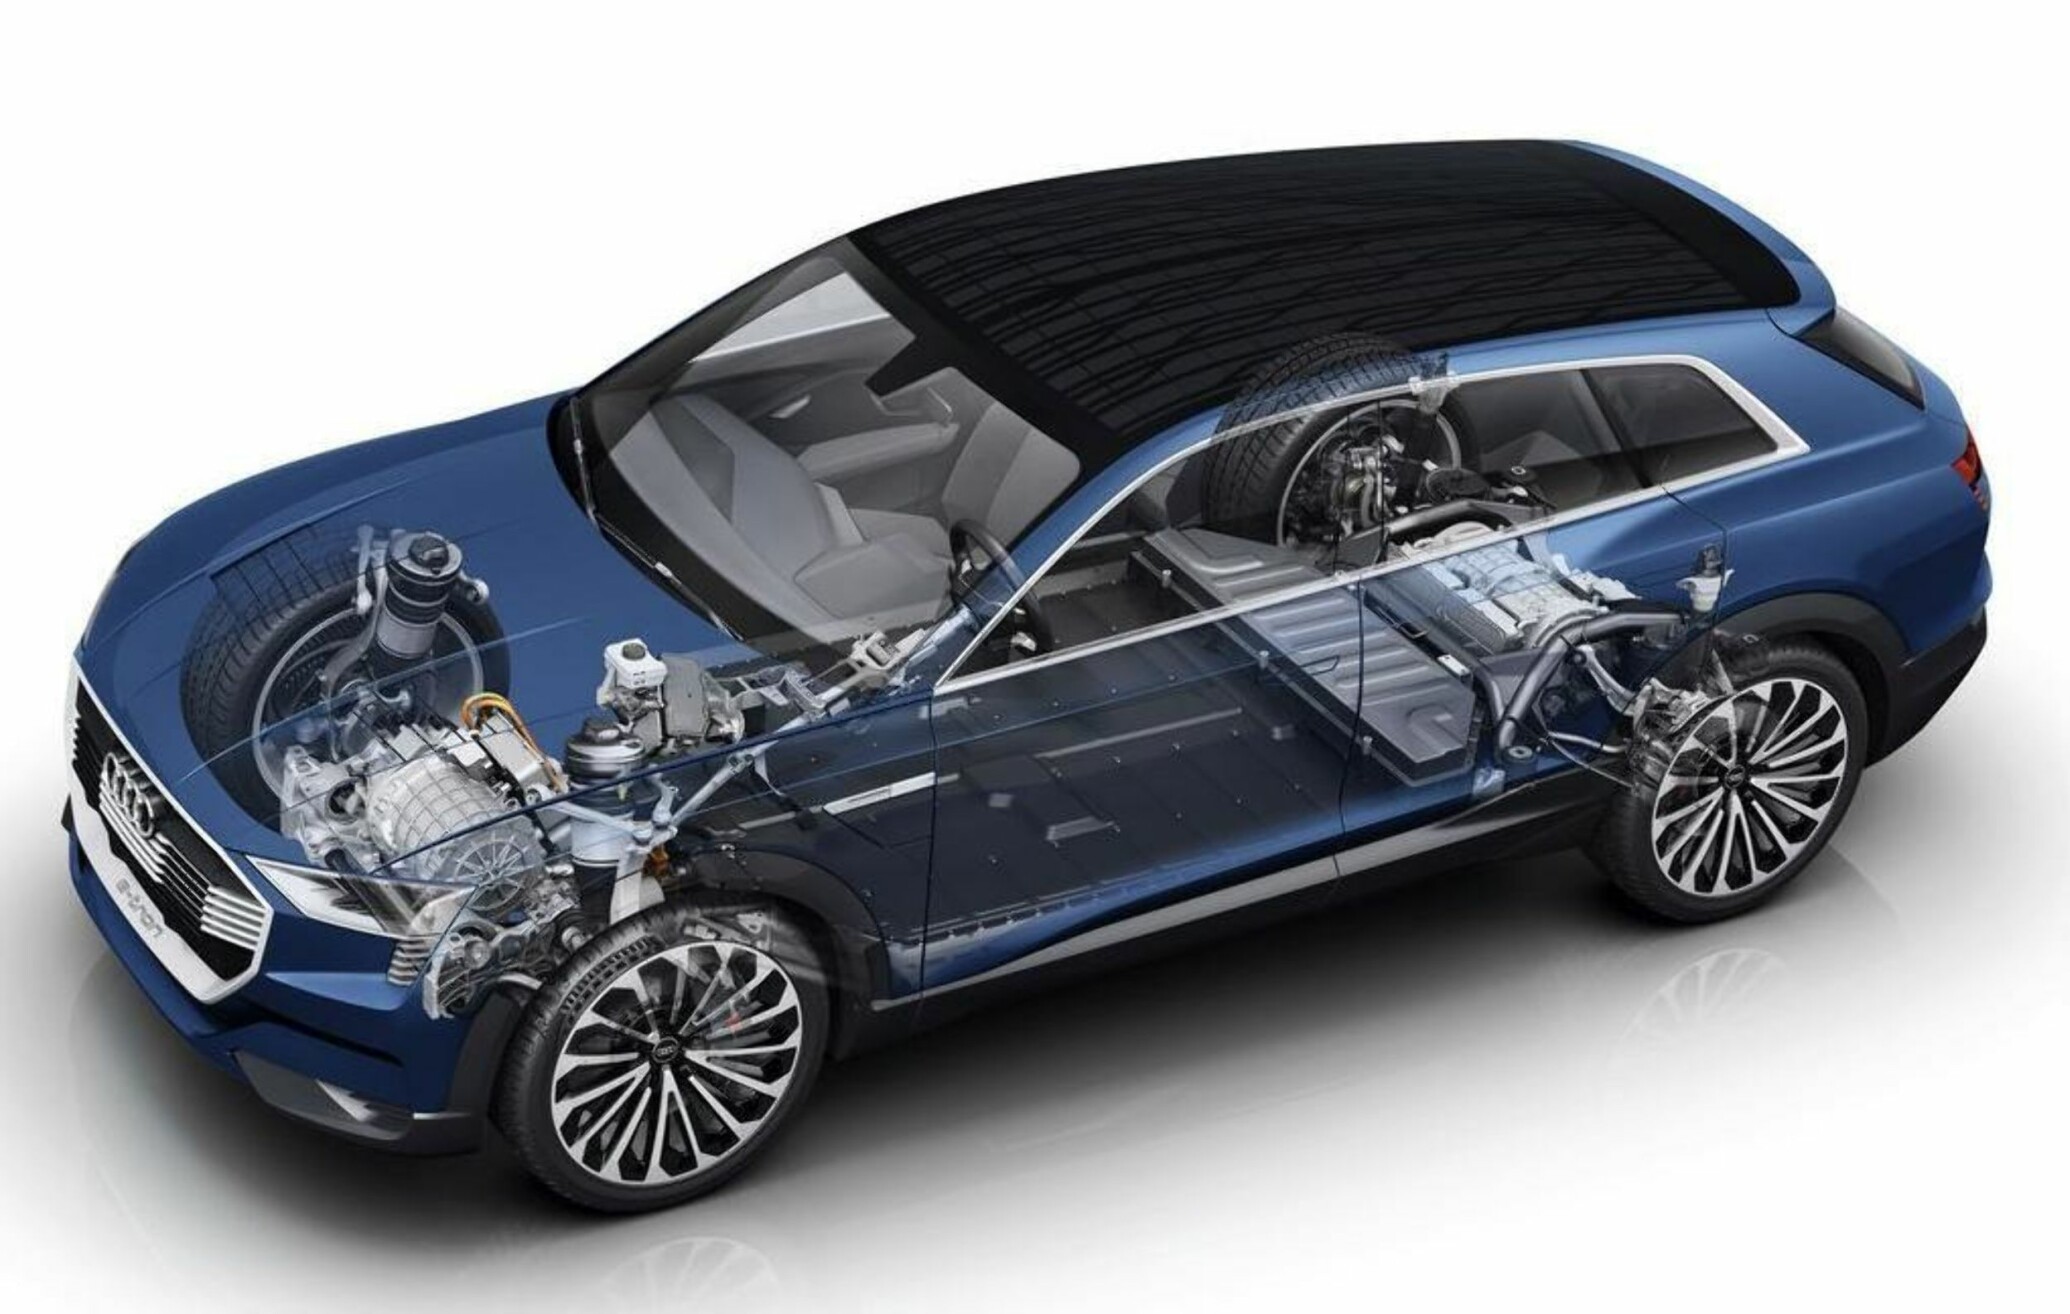 <b>FIREHJULSTREKK (4X4):</b> Pris på Audi e-tron med firehjulstrekk, hengerfeste, 435 hestekrefter og dugelig rekkevidde gjør SUV-en til spennende bil for nordmenn.